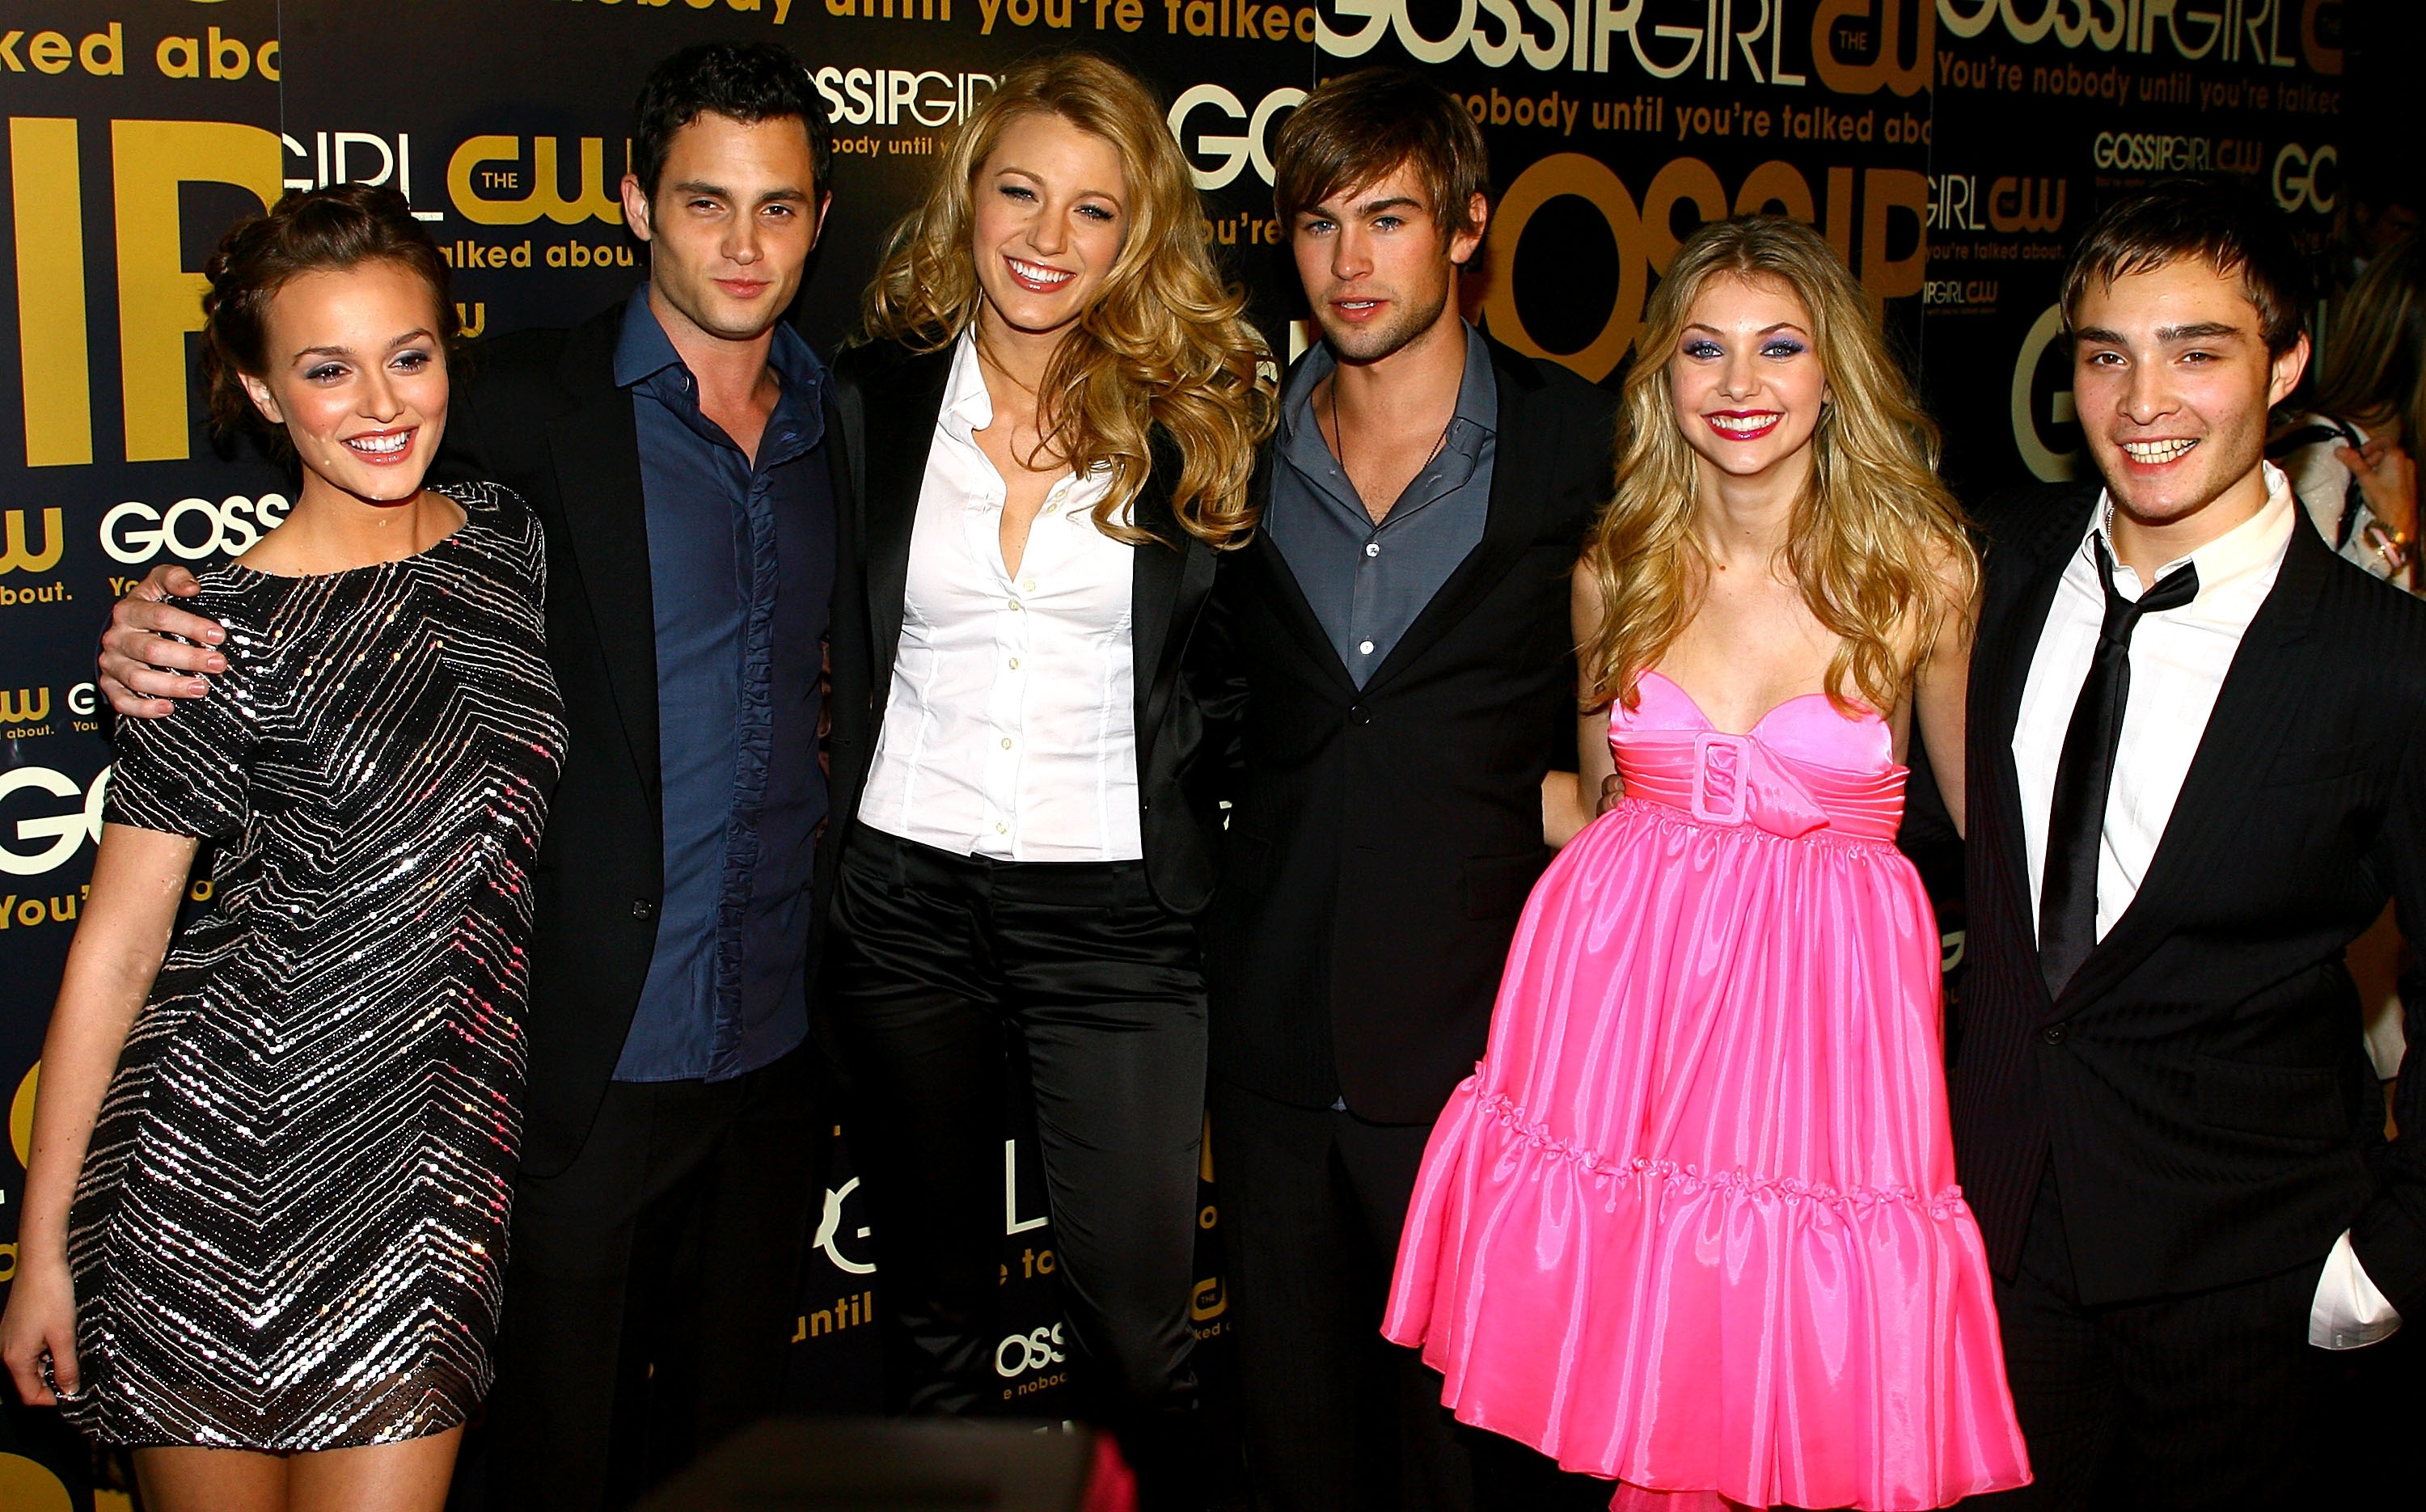 Gossip Girl cast in 2007.